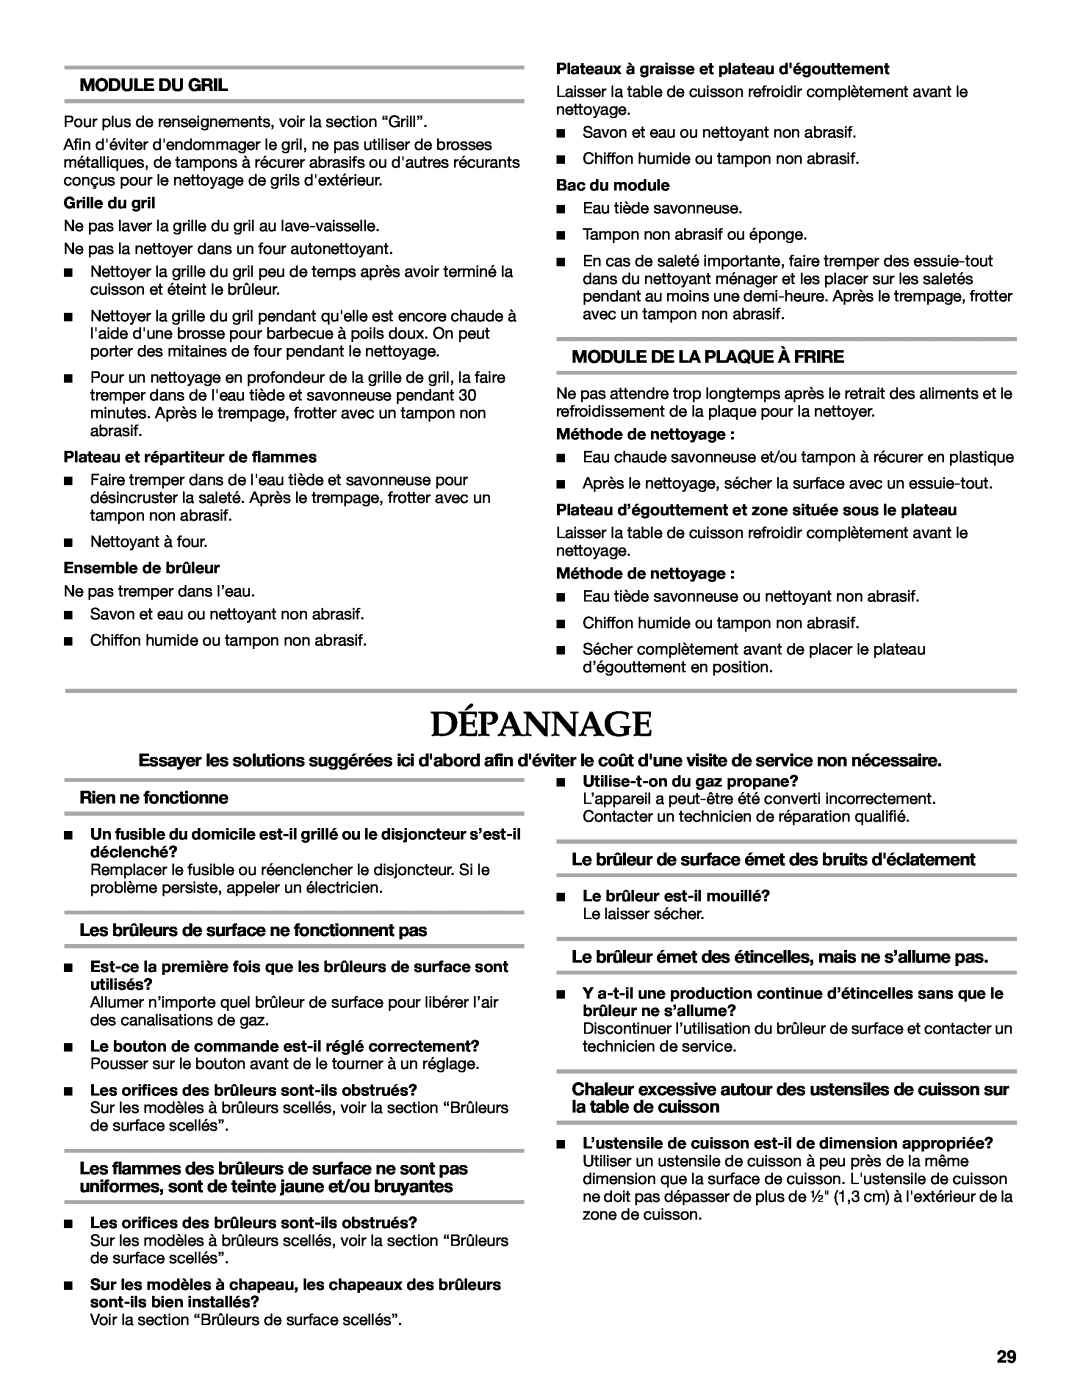 KitchenAid KGCU483VSS manual Dépannage, Module Du Gril, Module De La Plaque À Frire, Rien ne fonctionne 